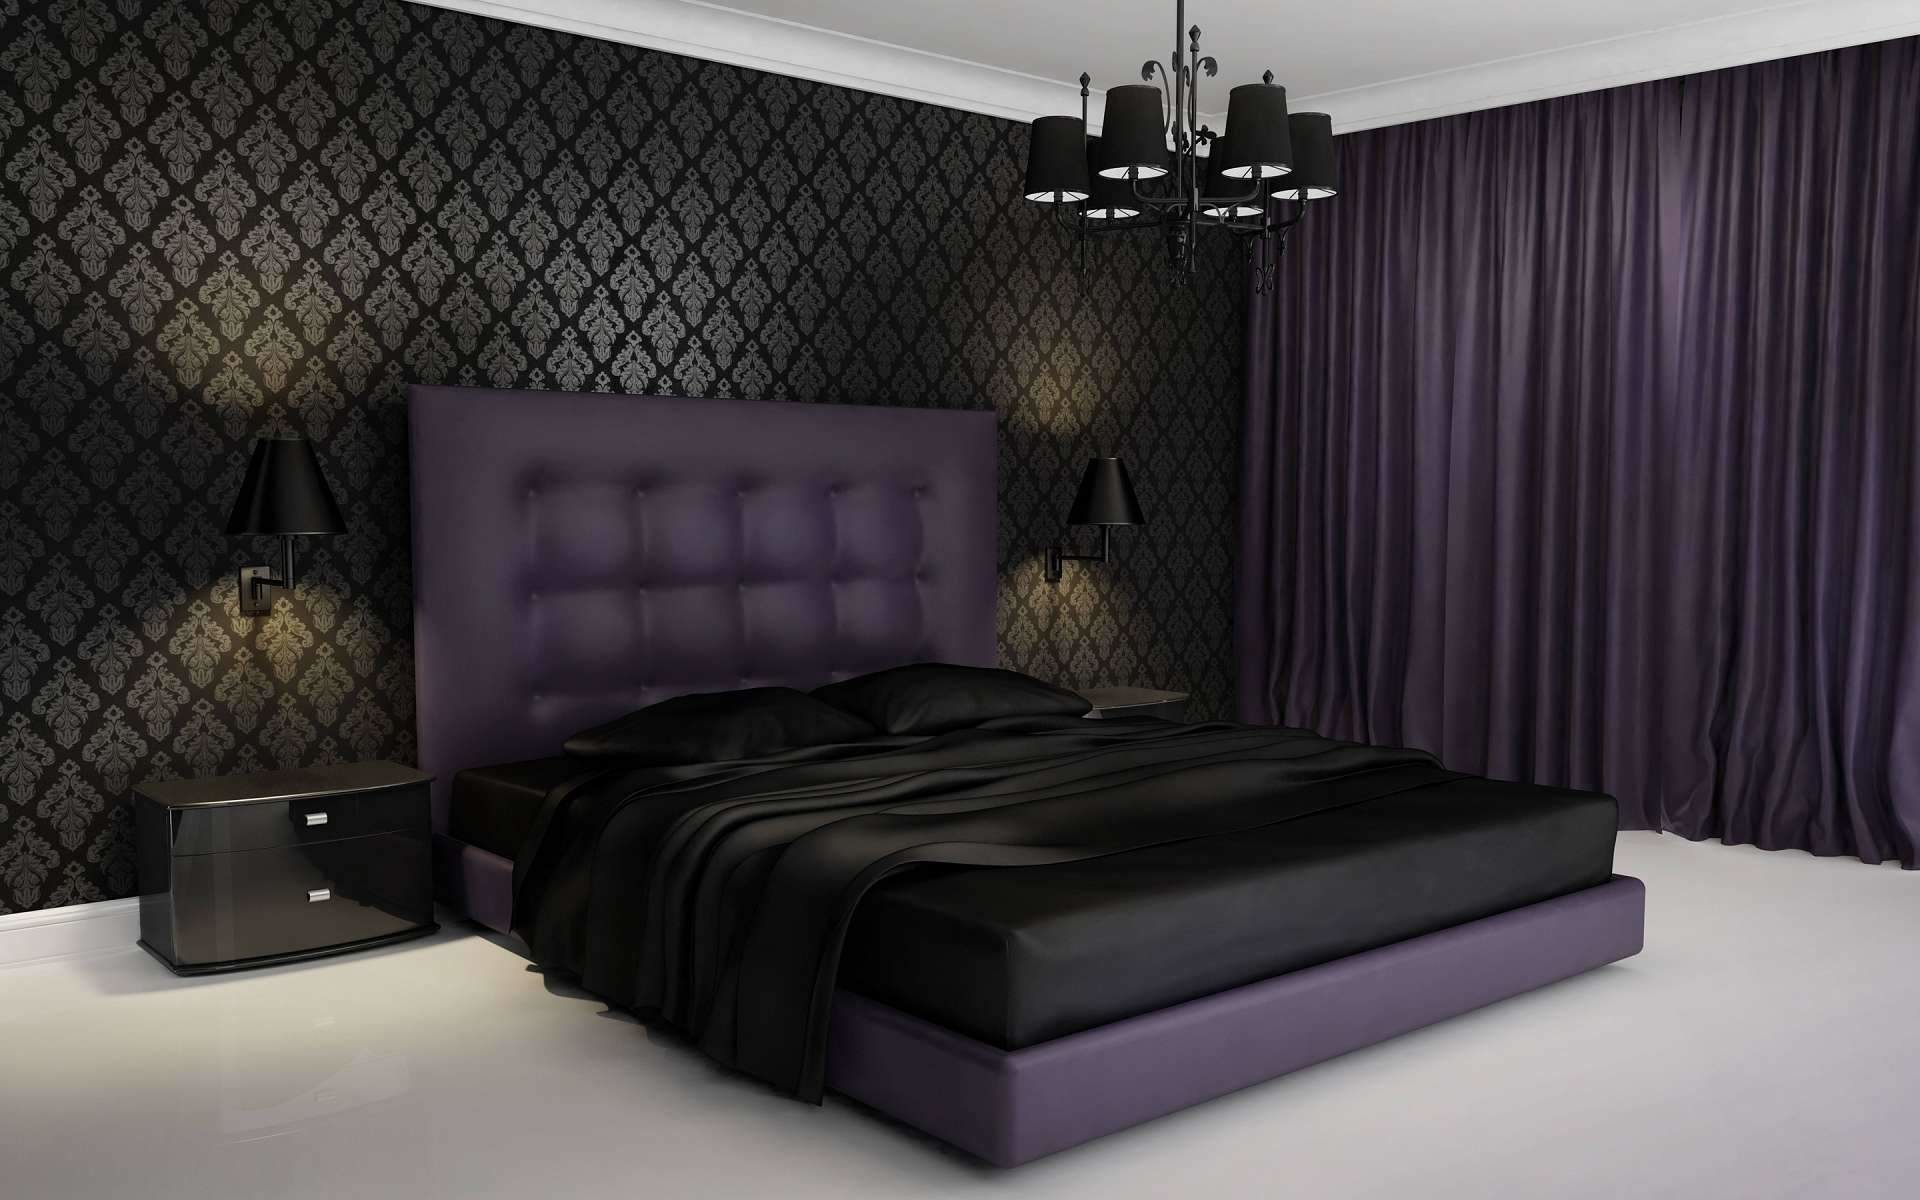 1920x1200 Creative Small Purple Bedroom Interior Decorating Ideas Best Luxury To  Small Purple Bedroom Interior Design Ideas